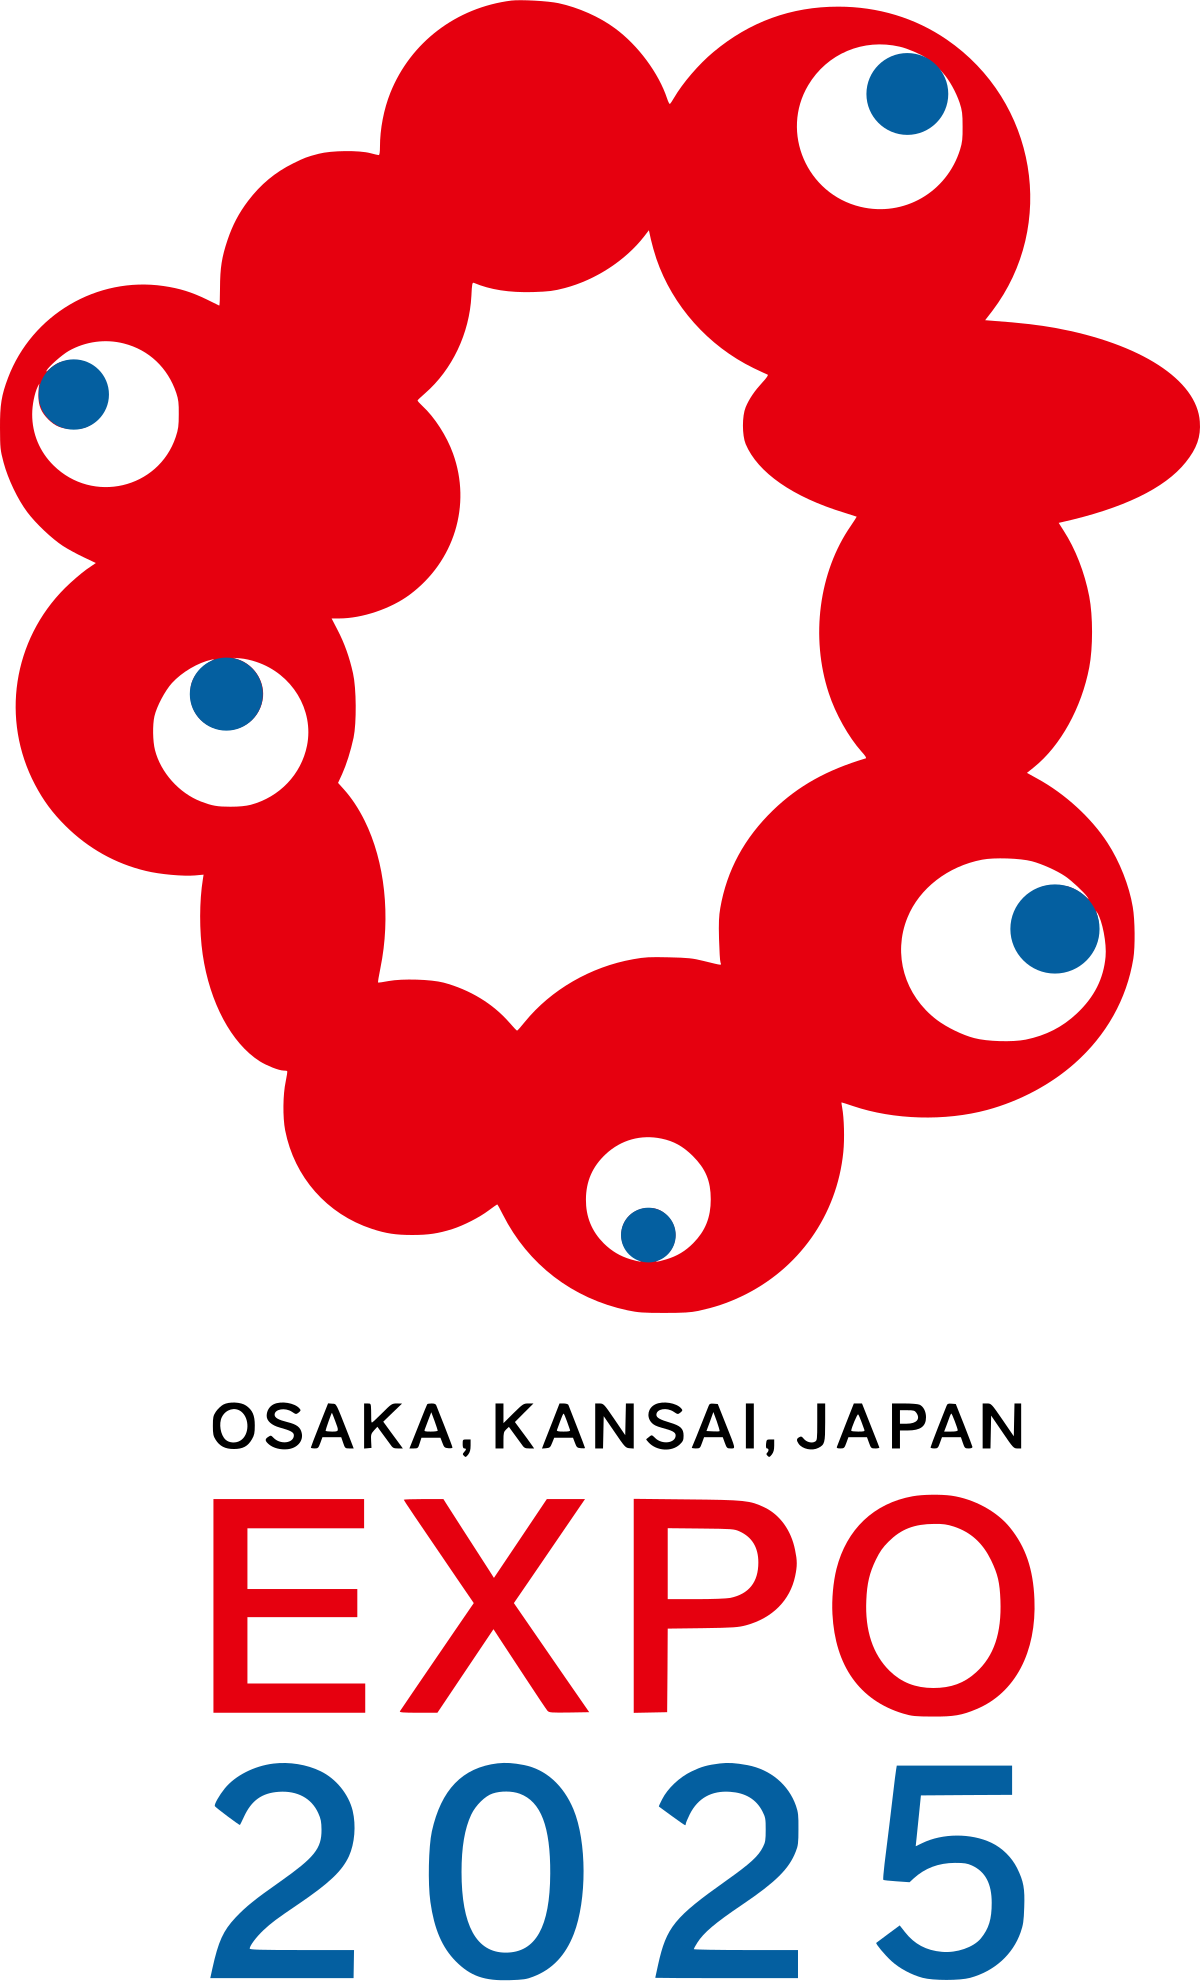 Expo 2025 - Wikipedia